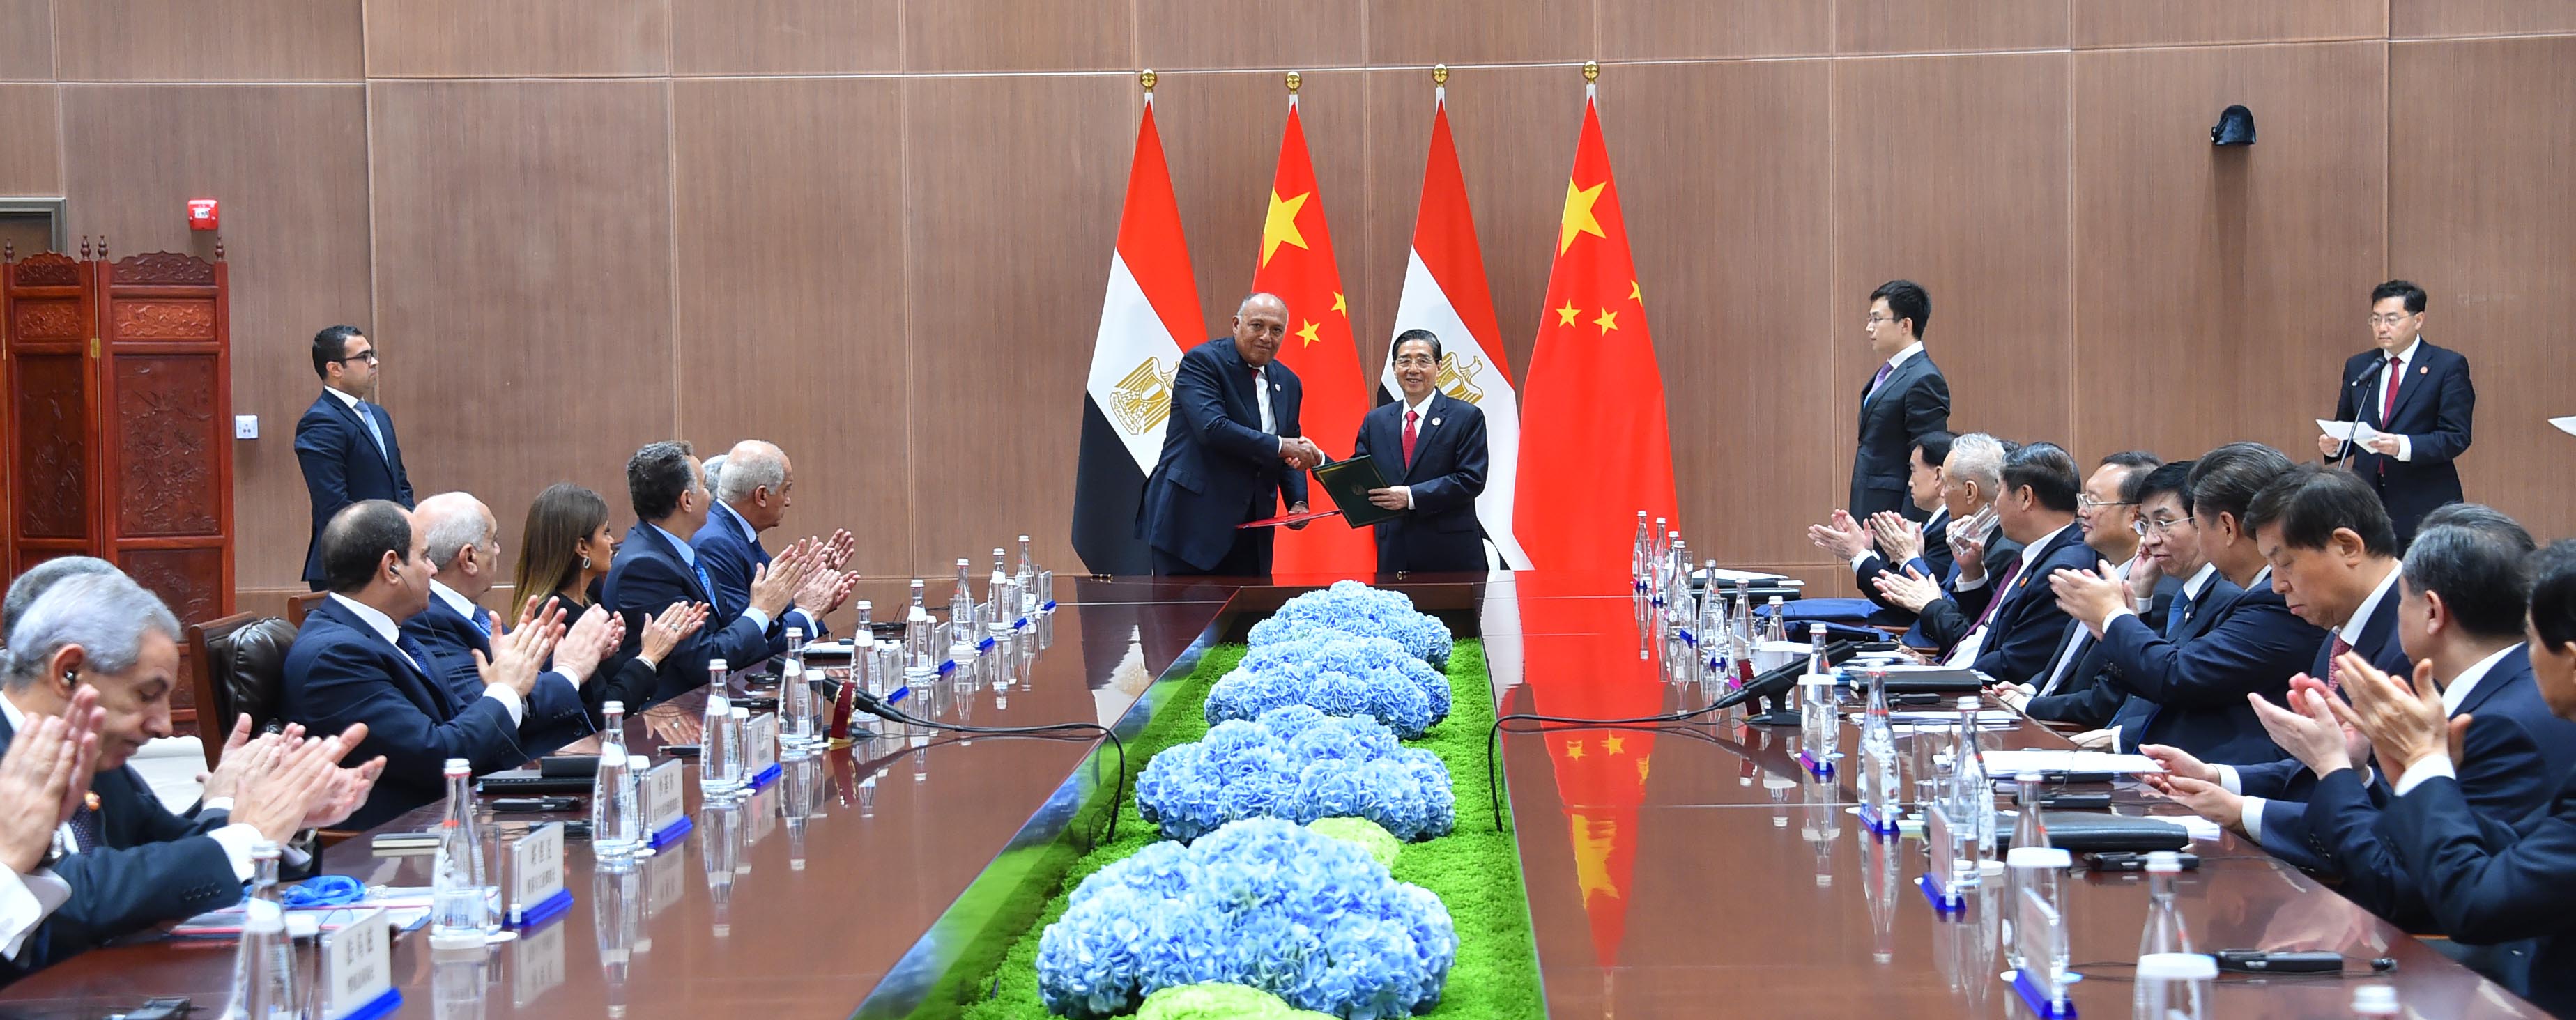 السيسي يلتقى رئيسى الصين وجنوب أفريقيا ورئيس وزراء الهند على هامش بريكس (4)